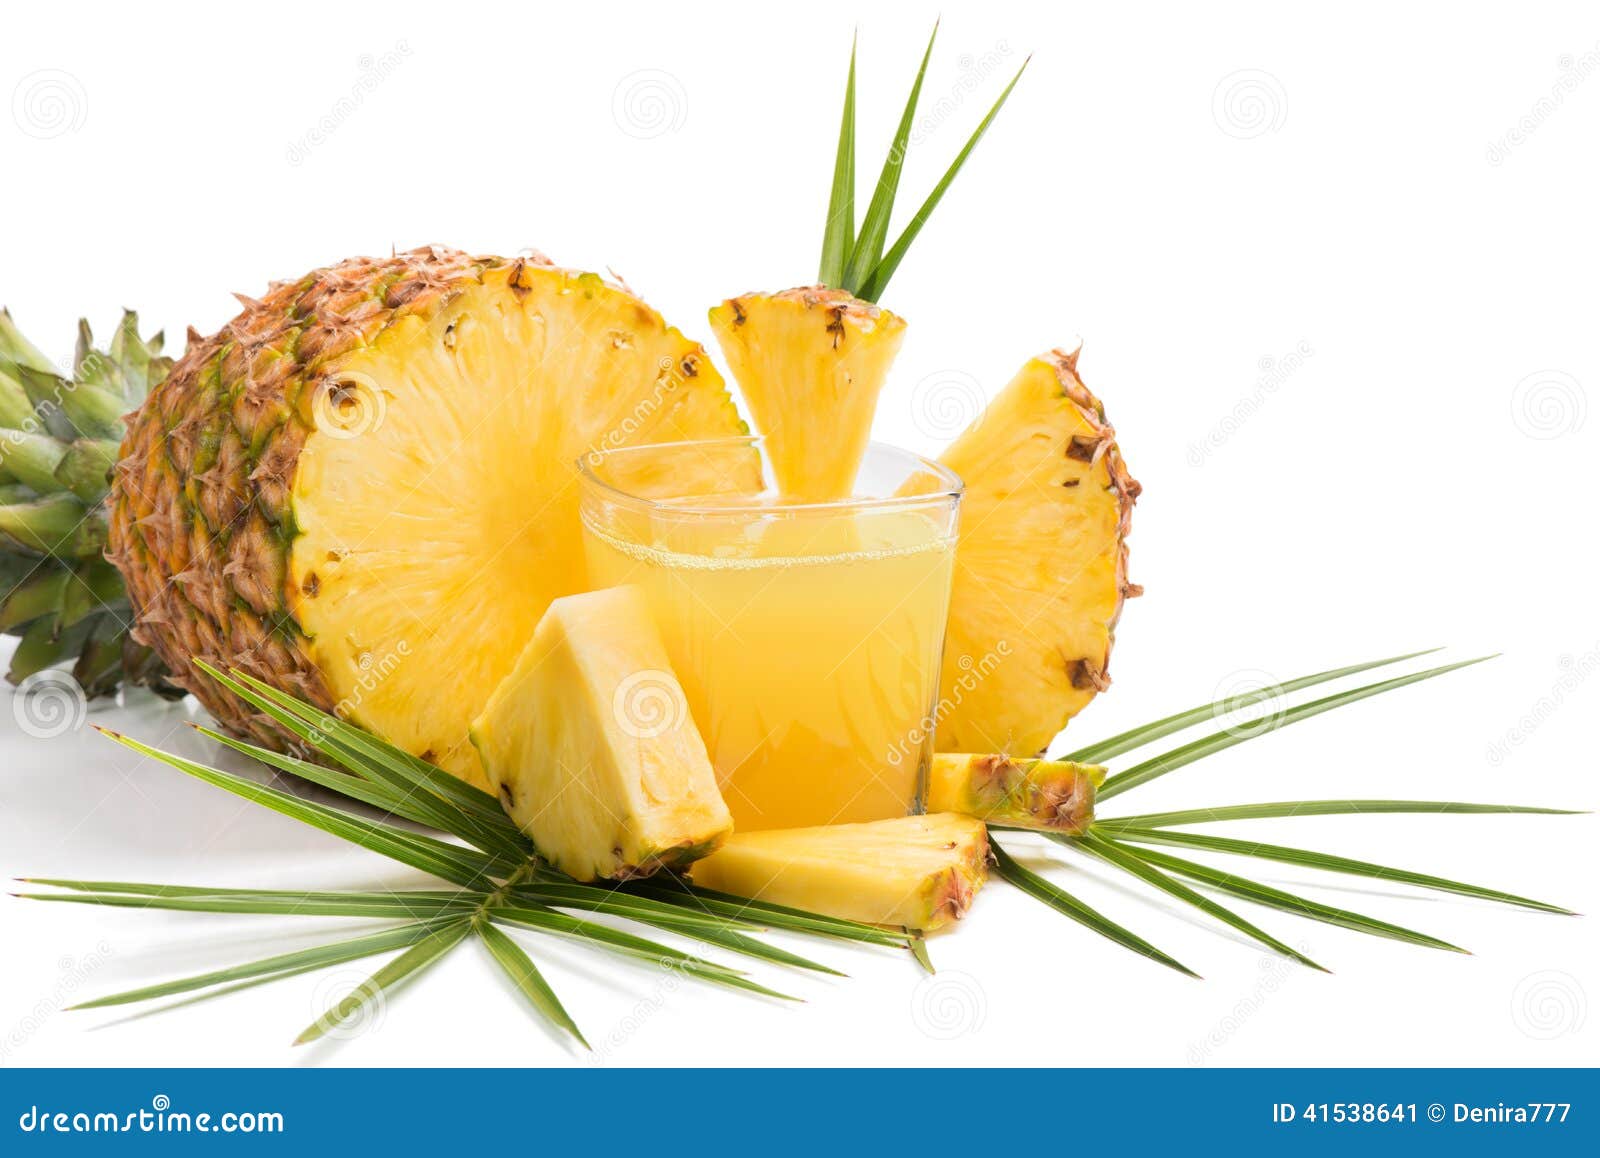 新鲜的菠萝汁和成熟菠萝在灰色背景 库存图片. 图片 包括有 绿色, 打赌的人, 饮食, 健康, 生活方式 - 123911993